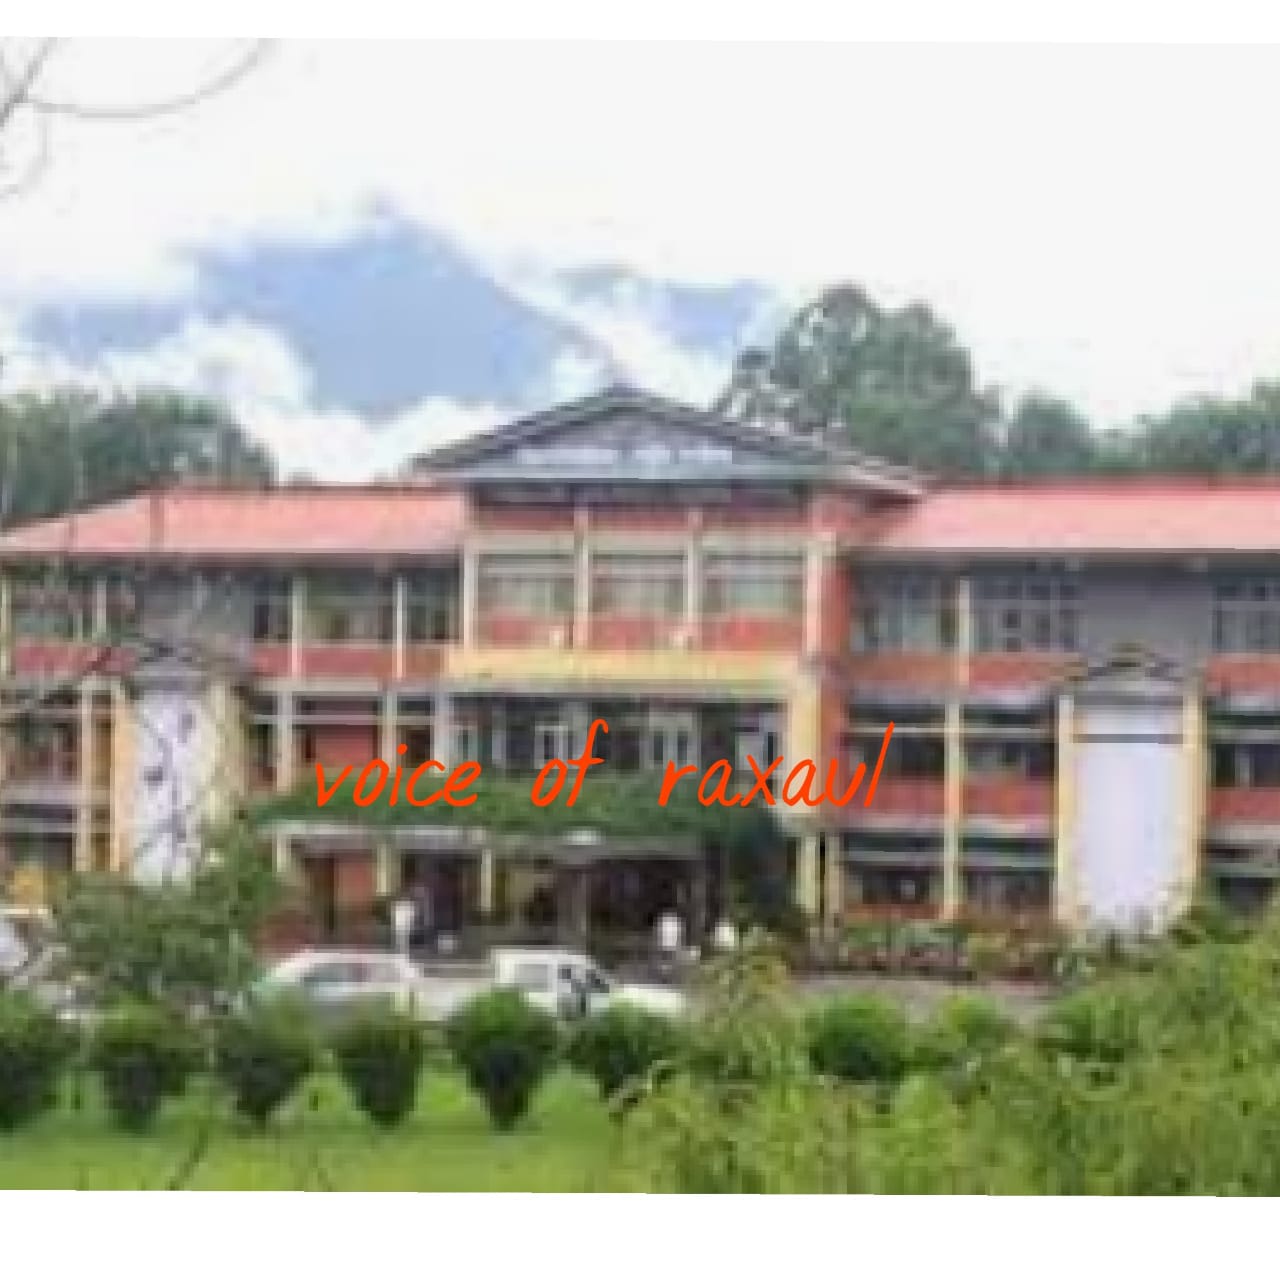 एम्बेसी ने नेपाल में कार्यरत भारतीय प्राध्यापकों की रिटायरमेंट संबंधी सुविधाओं पर लिया संज्ञान